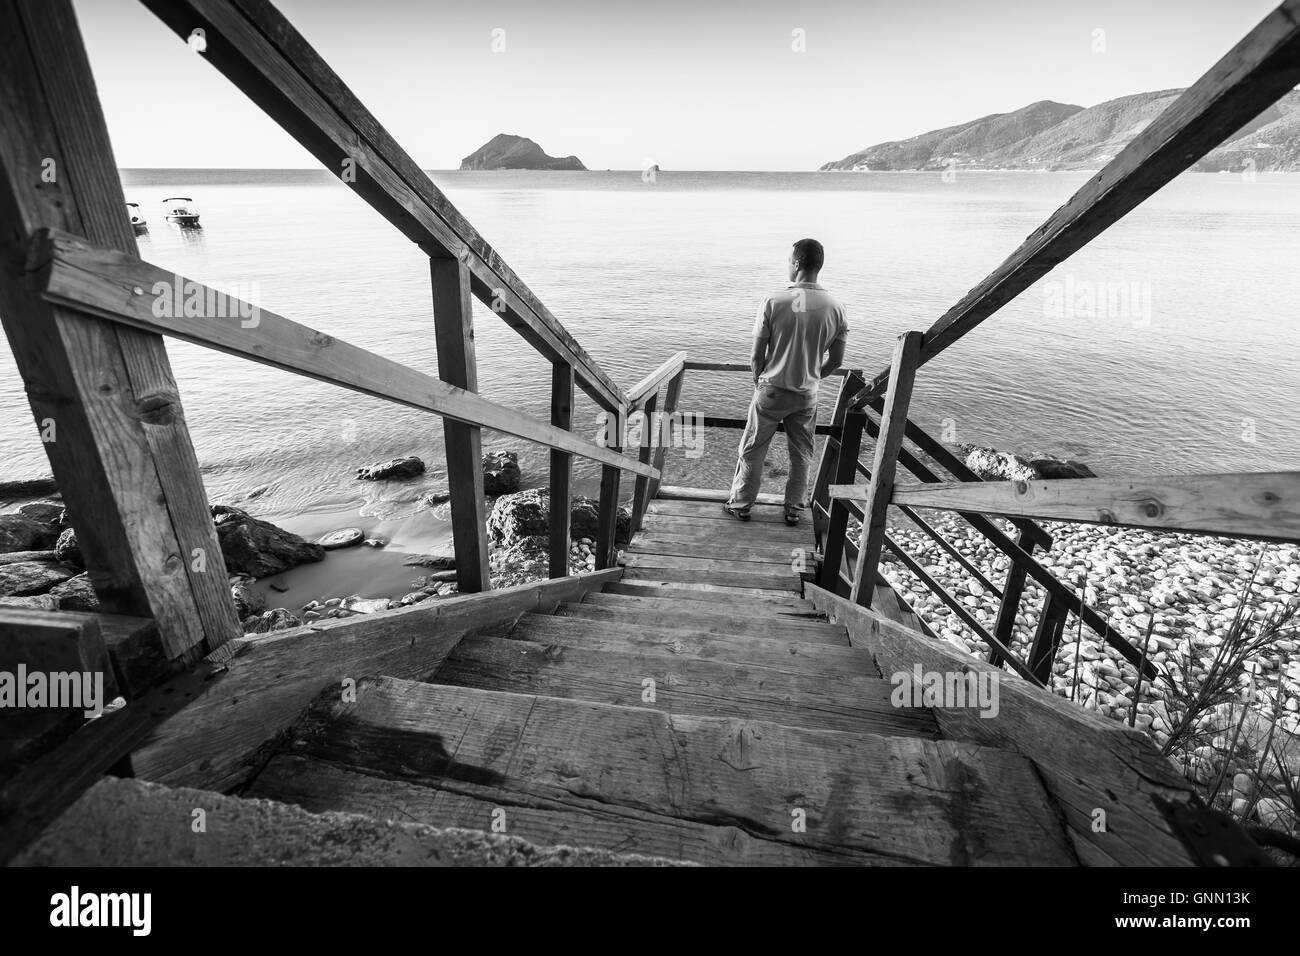 Jeune homme se dresse sur l'ancien escalier en bois qui descend jusqu'à la côte de la mer, le matin, photo en noir et blanc Banque D'Images